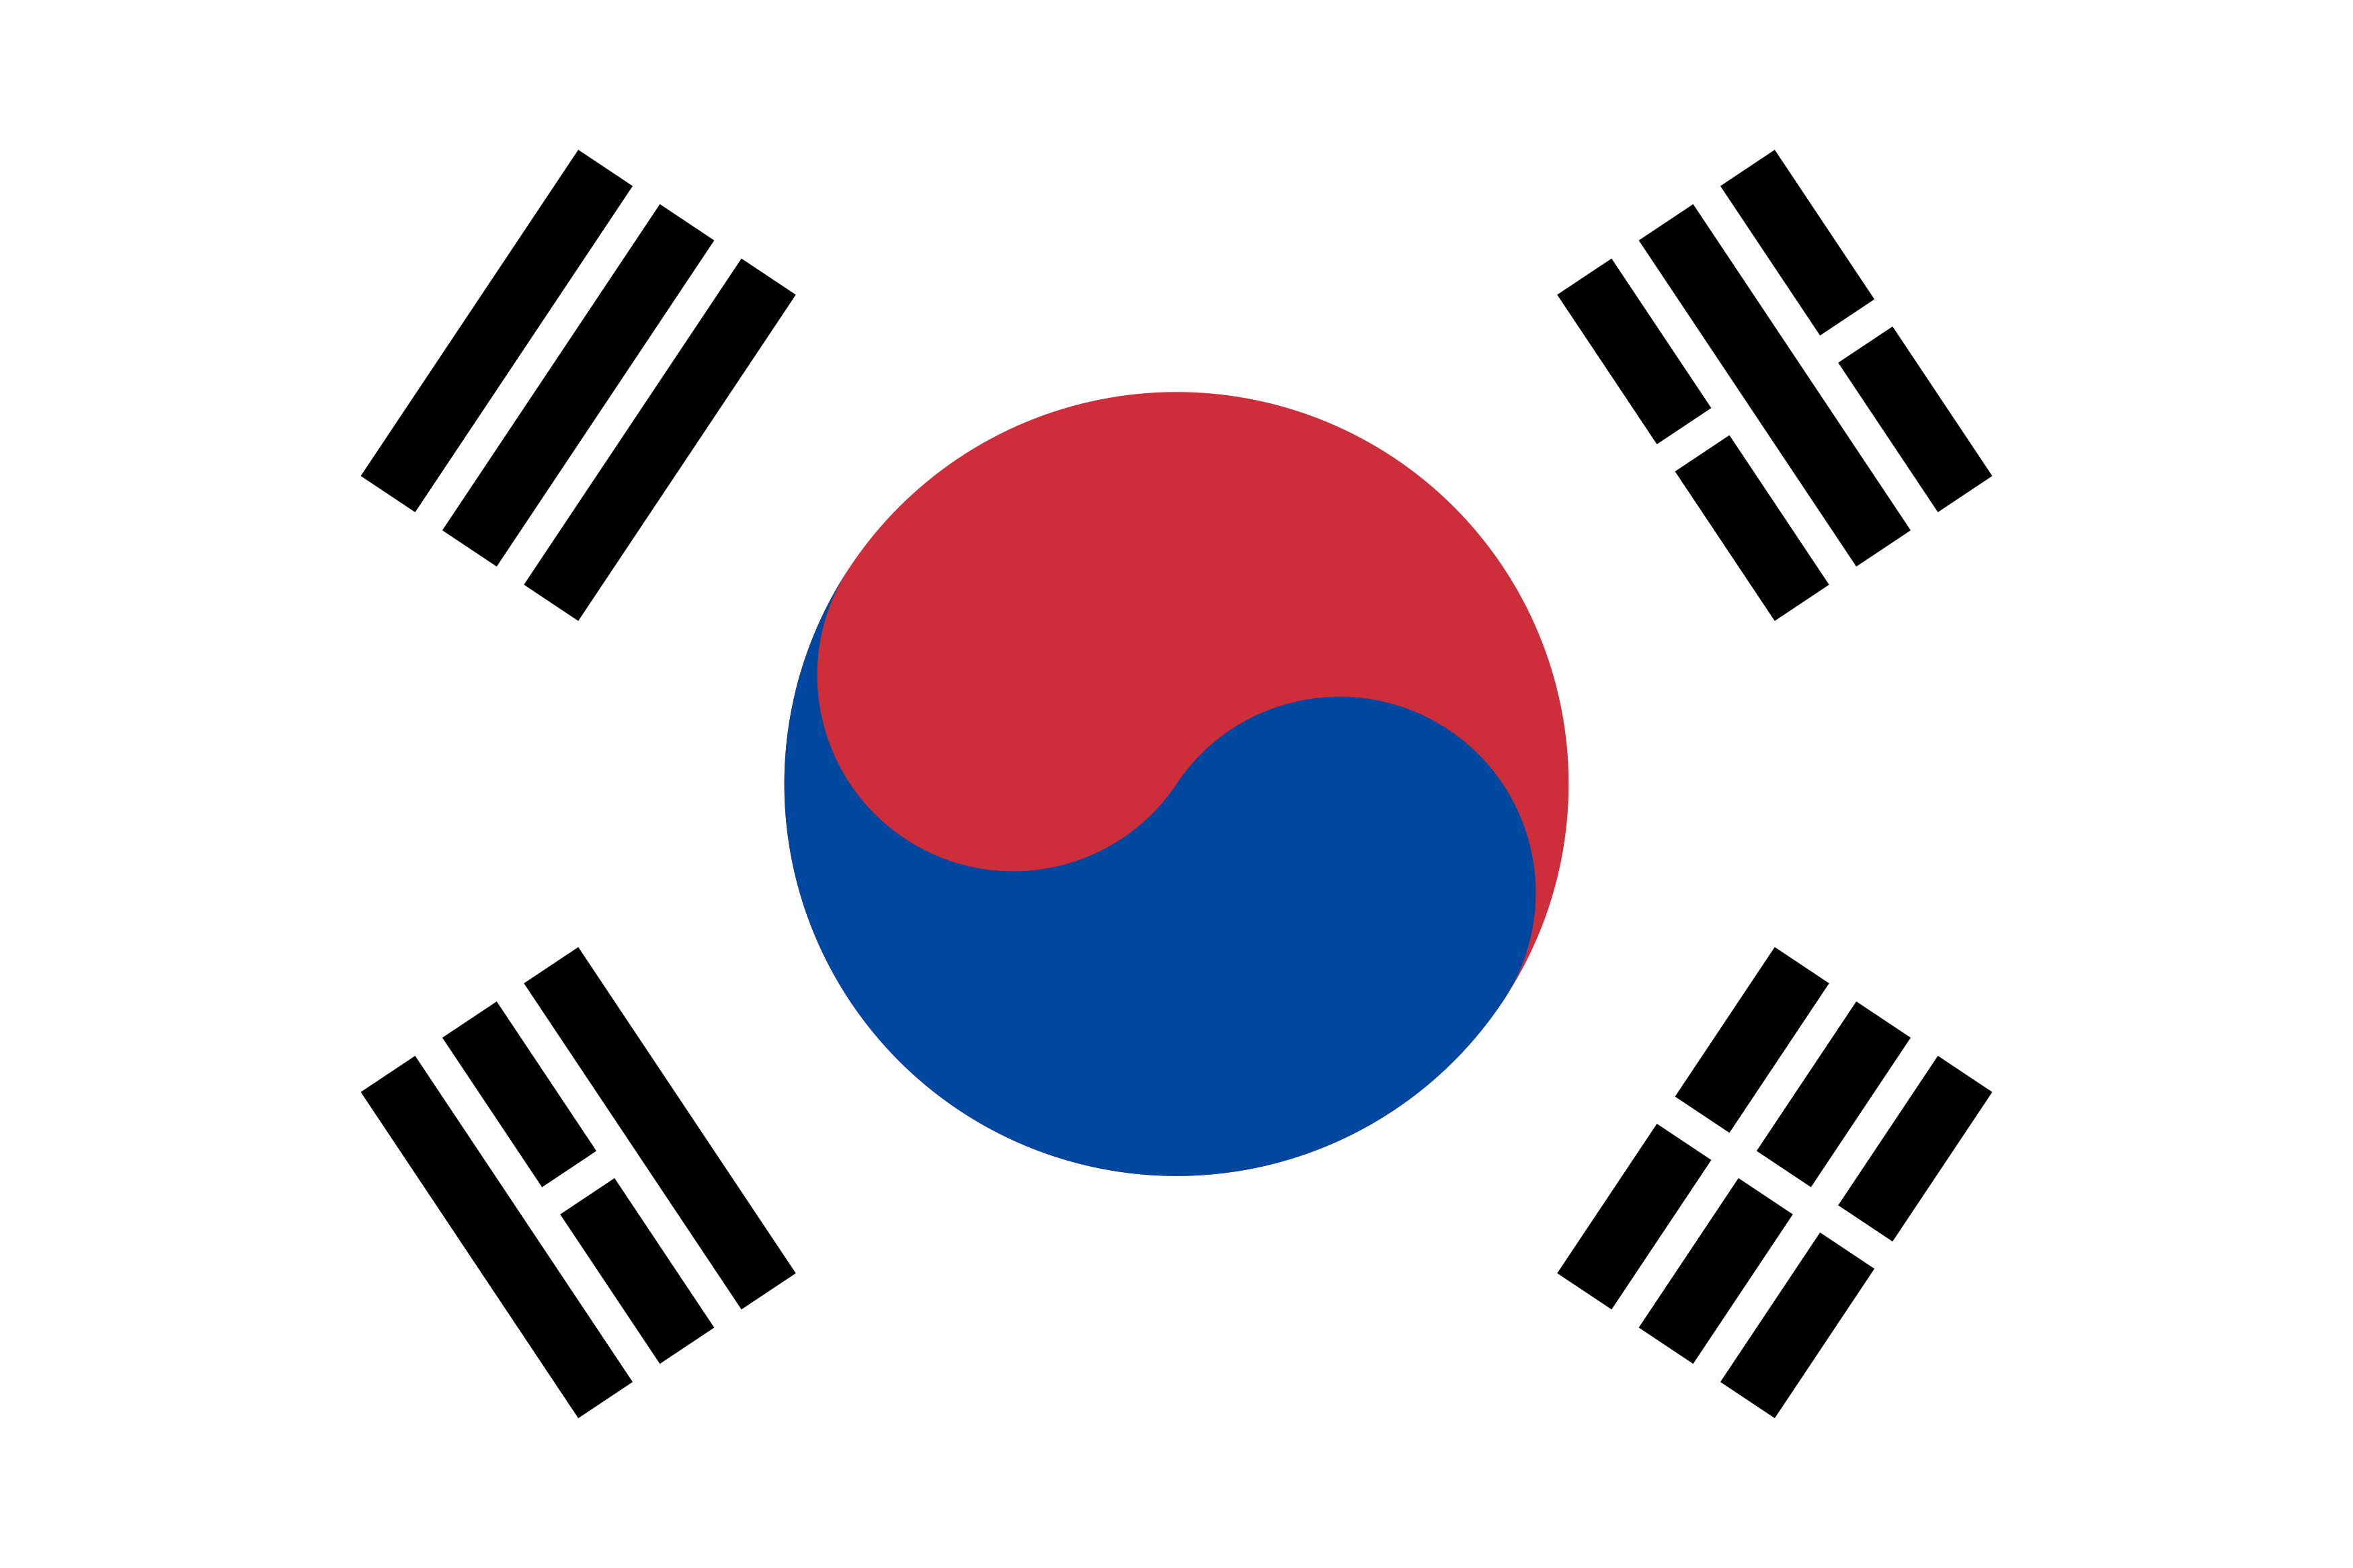 bandeira-coreia-do-sul